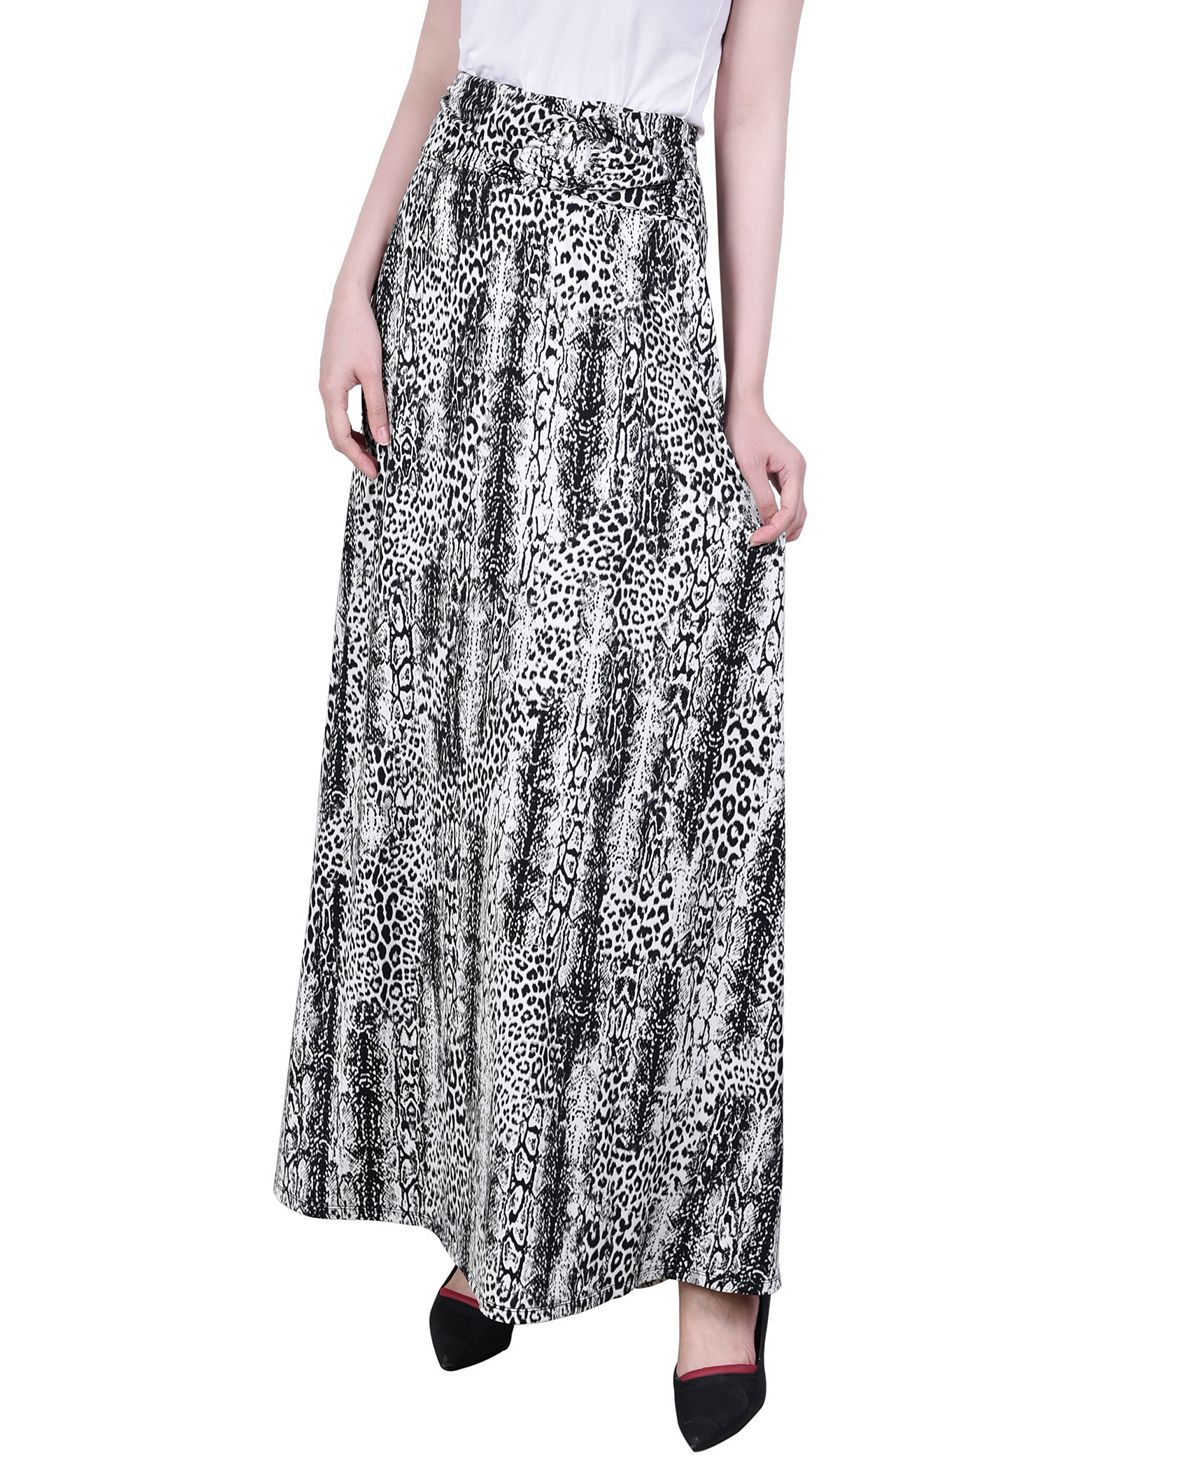 Миниатюрная длинная юбка-трапеция с искусственным поясом спереди и кольцом NY Collection, мульти юбка tj collection базовая 40 42 размер